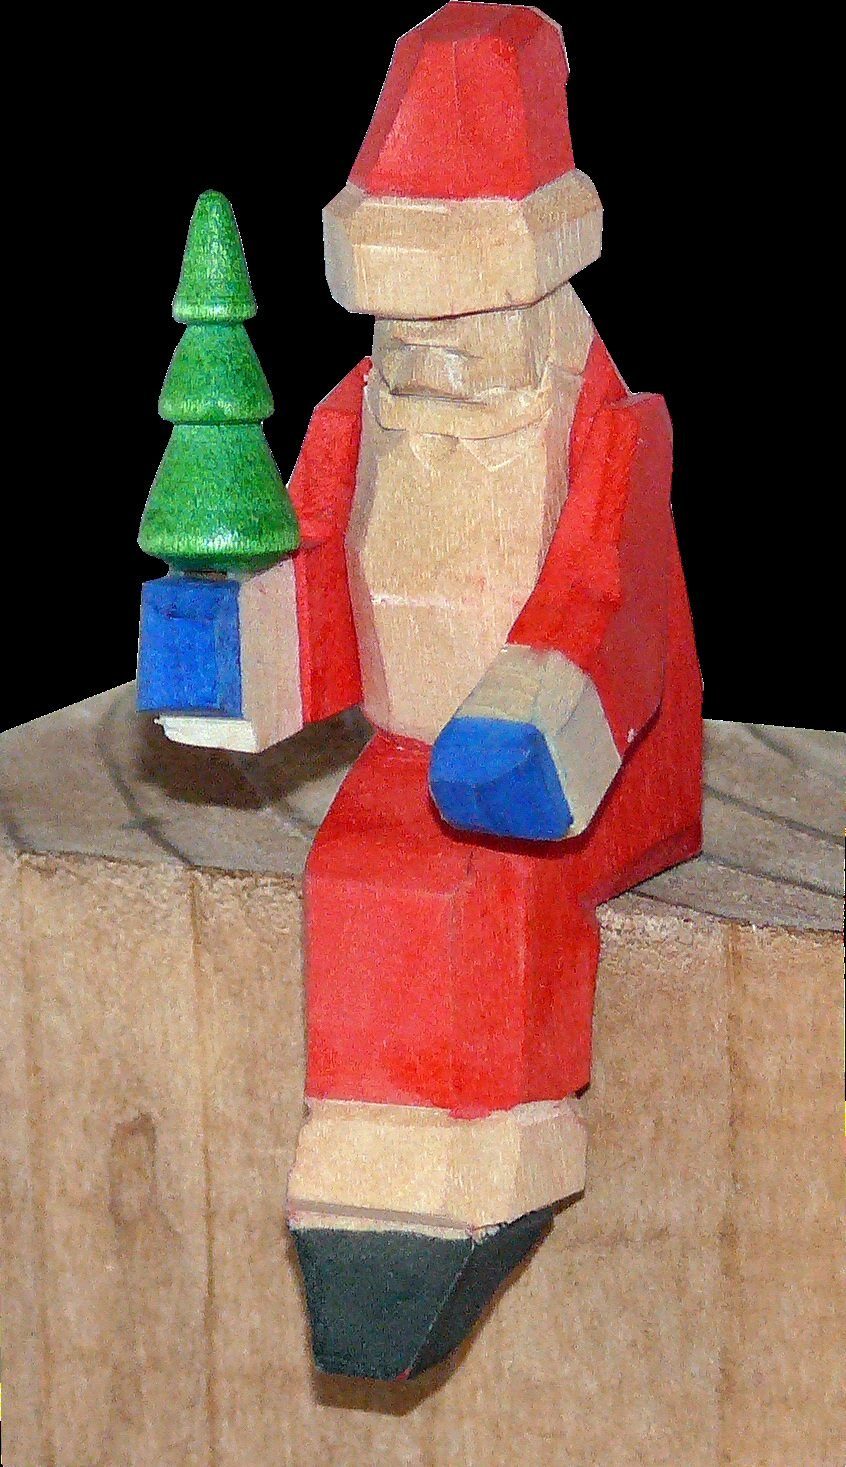 Kantenhocker geschnitzt bunt mini Bescherung Weihnachtsmann Weihnachtsfigur 6cm